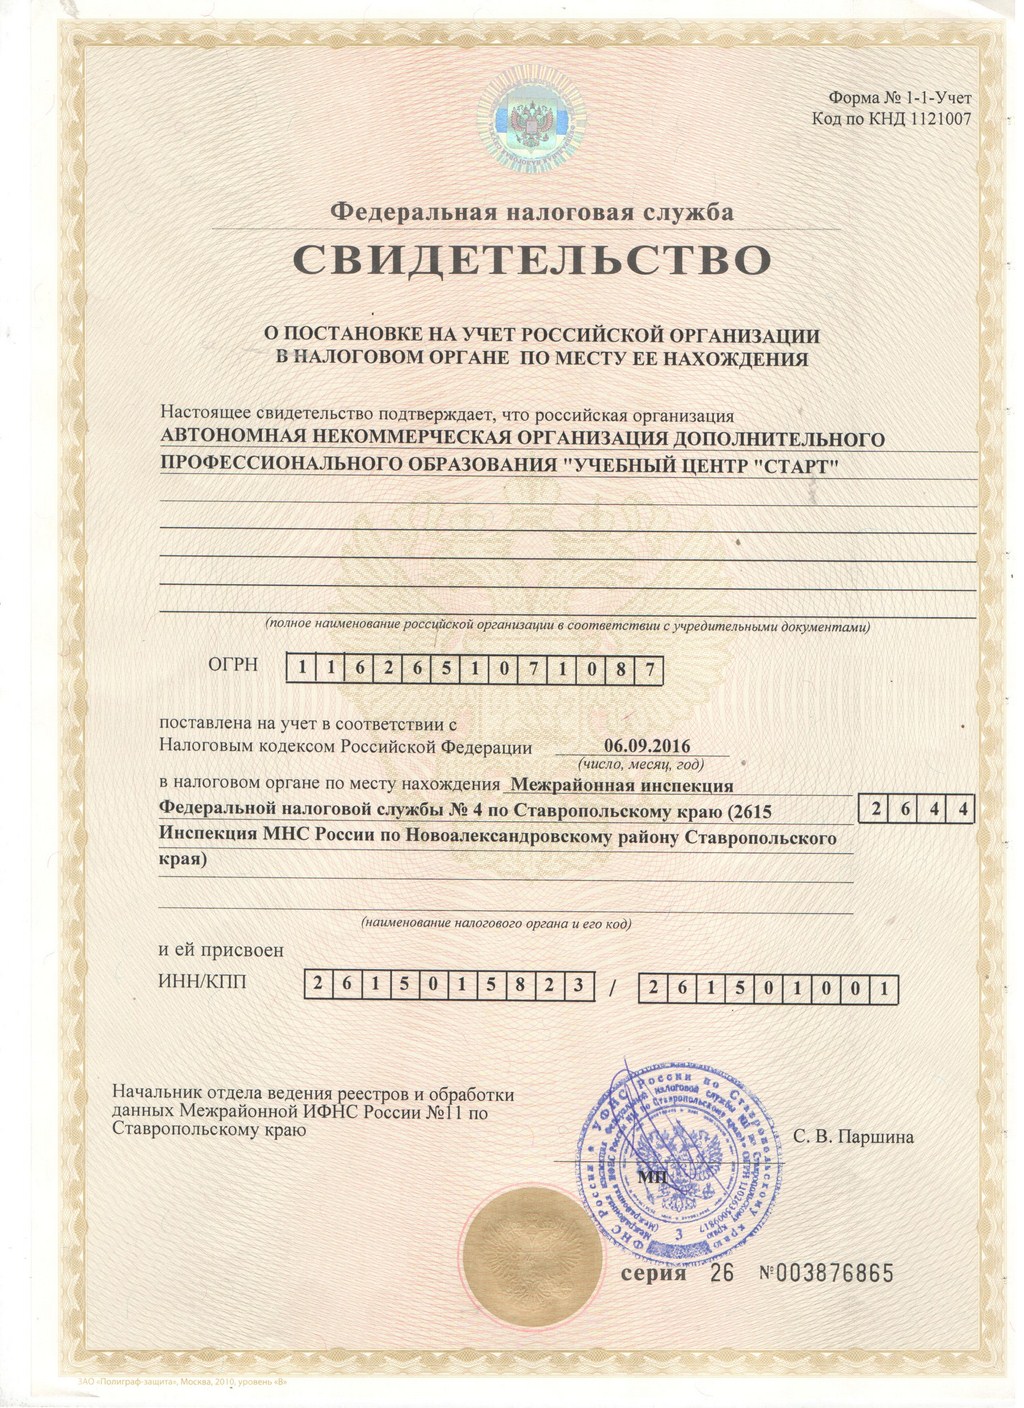 Свидетельство о постановлении на учет Российской Организации в Налоговом органе по месту ее нахождения